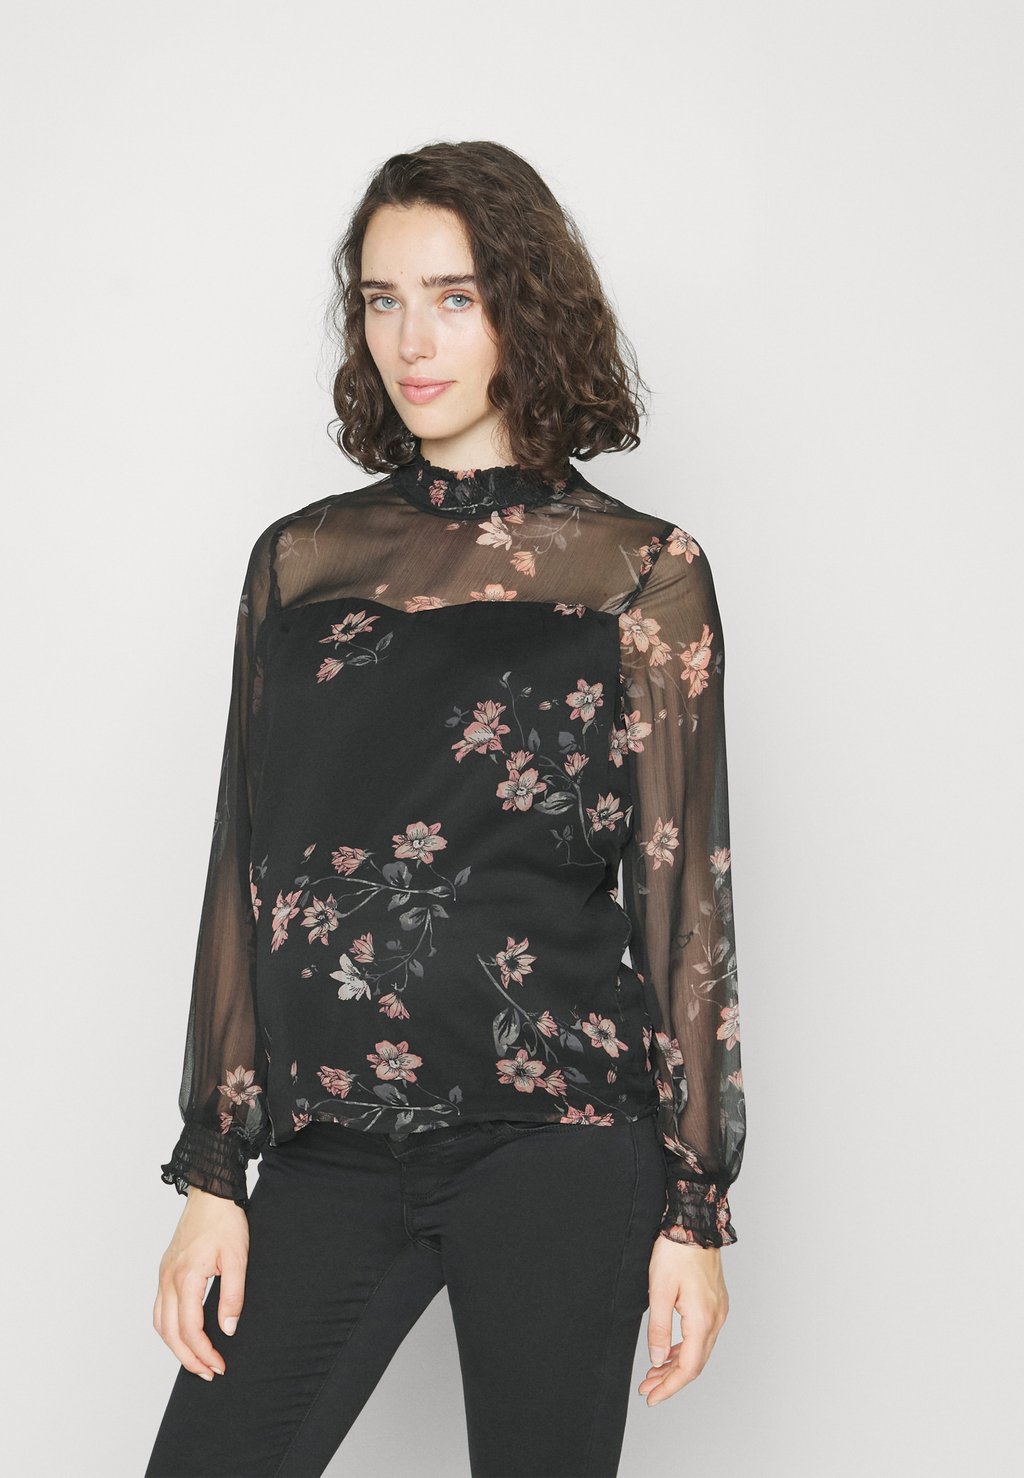 Блузка Vero Moda с цветочным принтом, черный/мультиколор блузка с запахом vero moda сиреневого цвета с ярким цветочным принтом